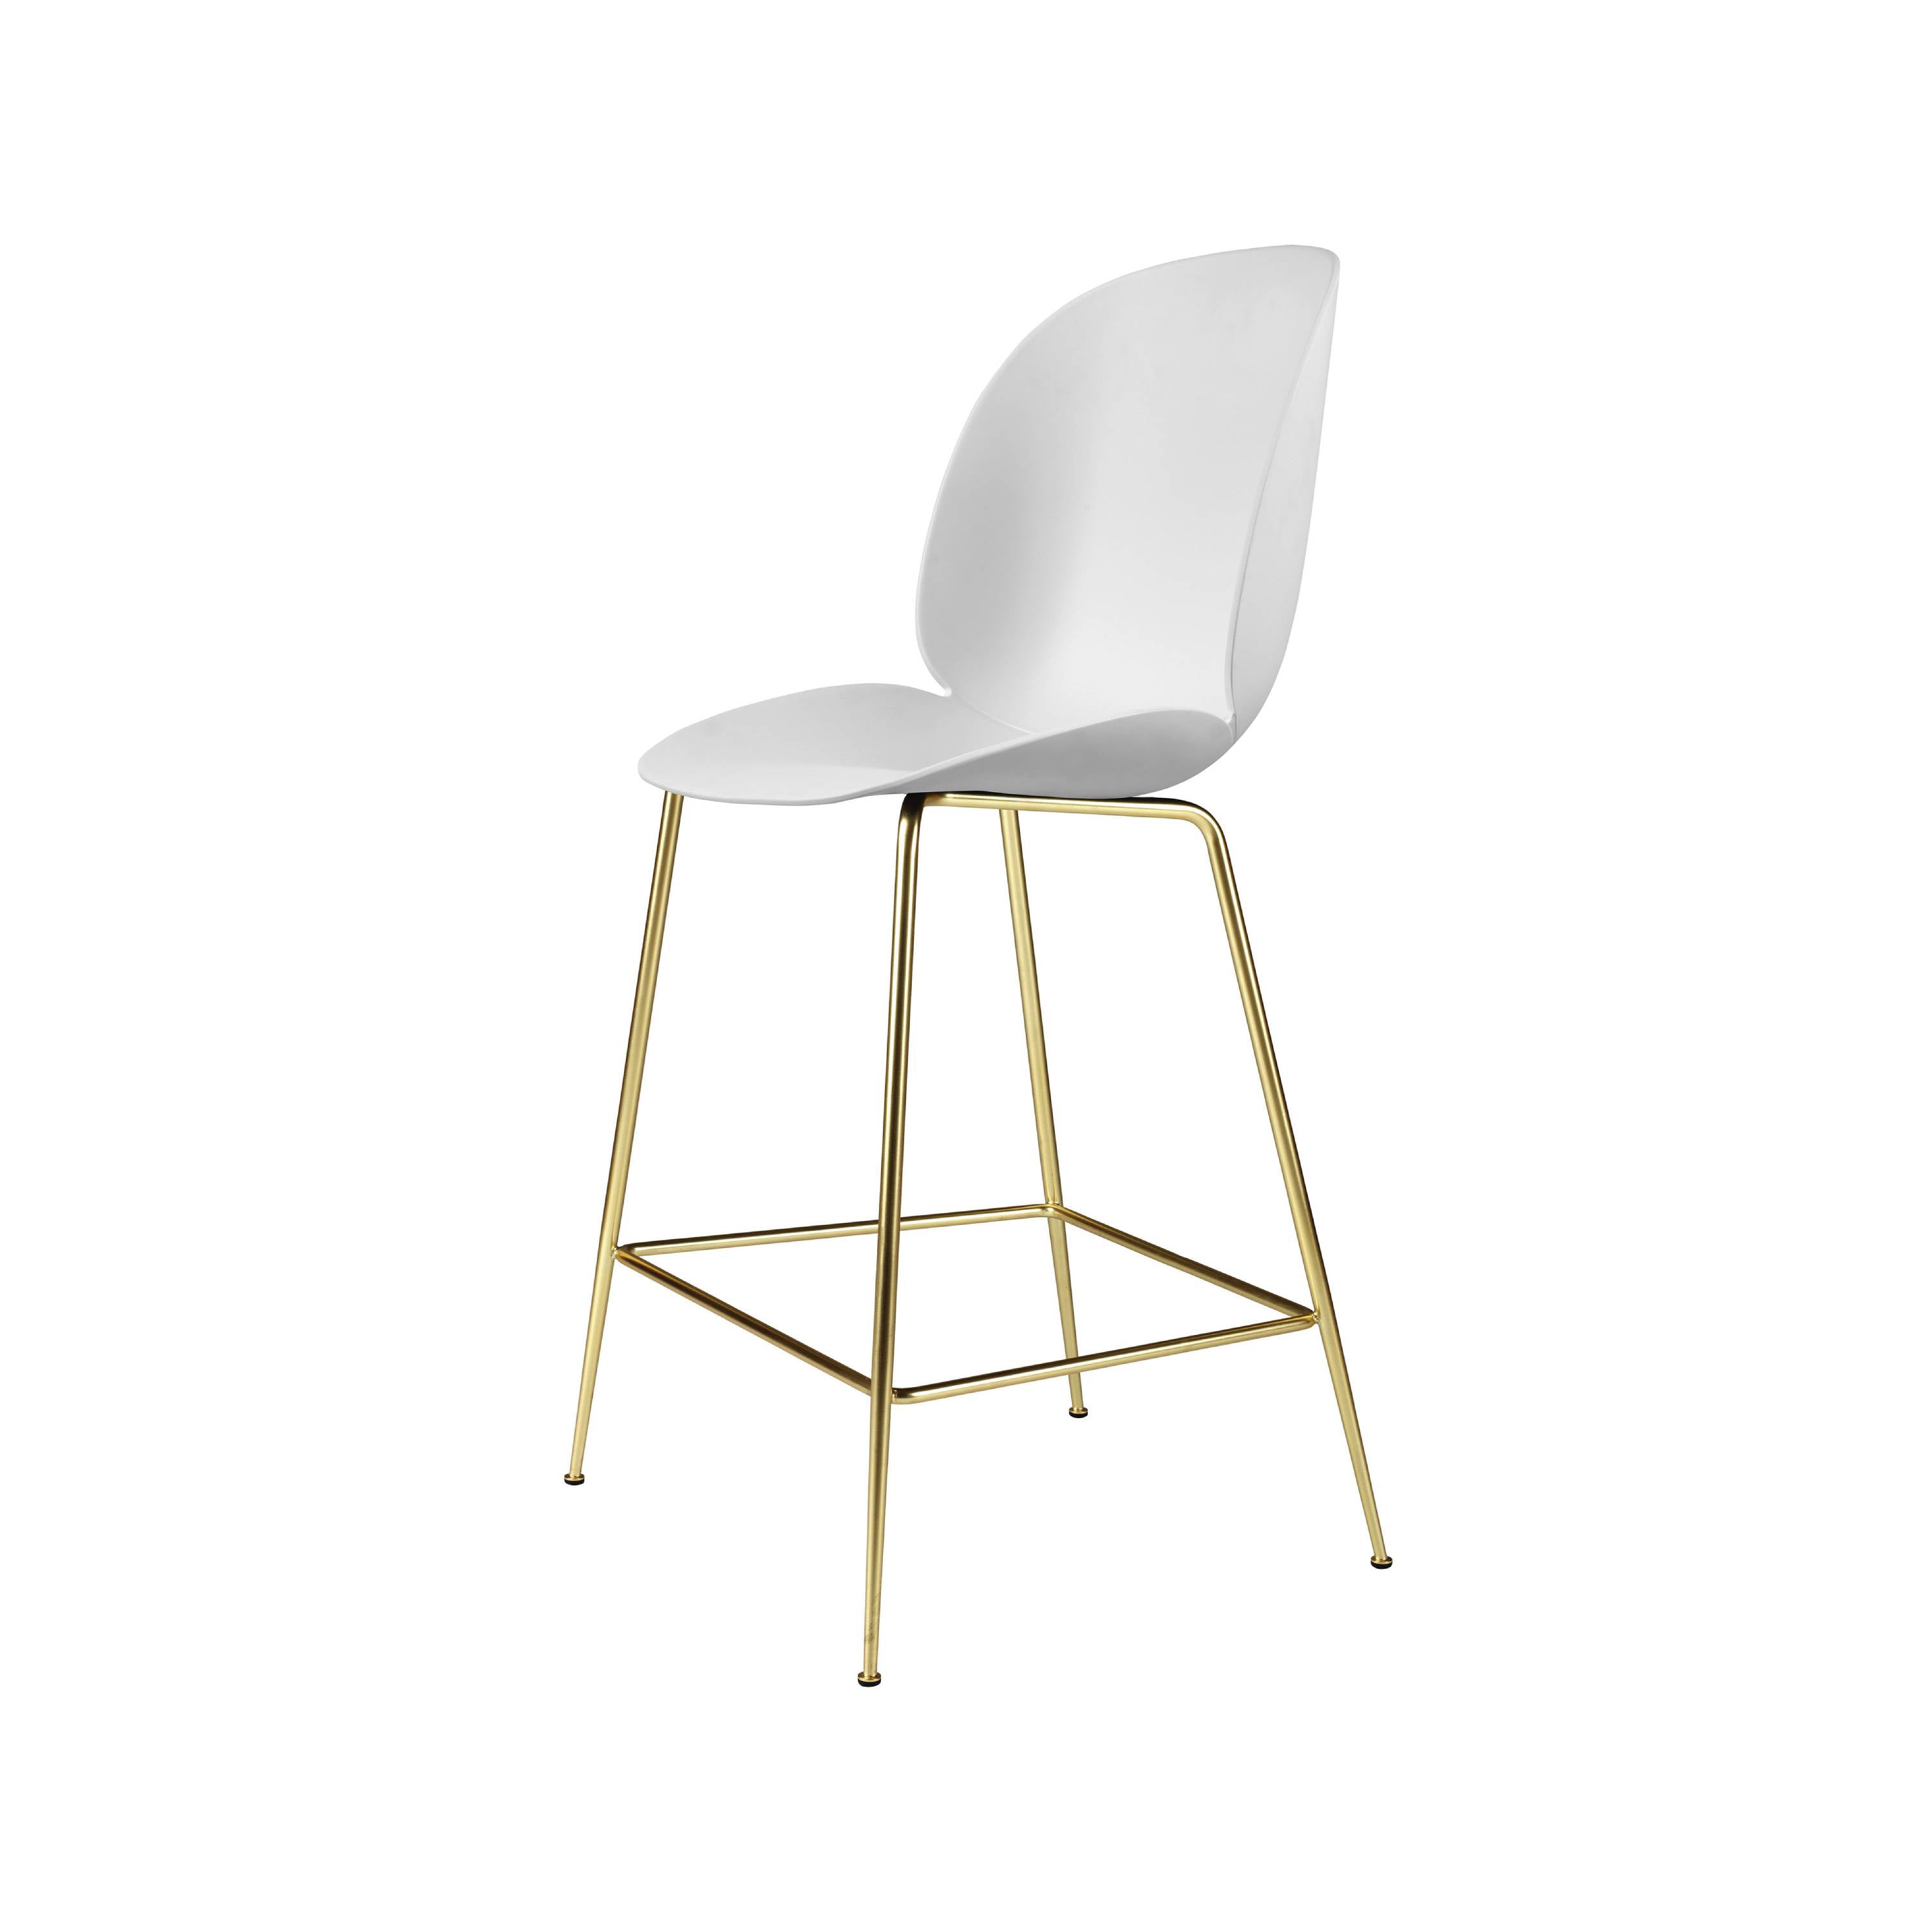 Beetle Bar + Counter Chair: Counter + Alabaster White + Brass Semi Matt